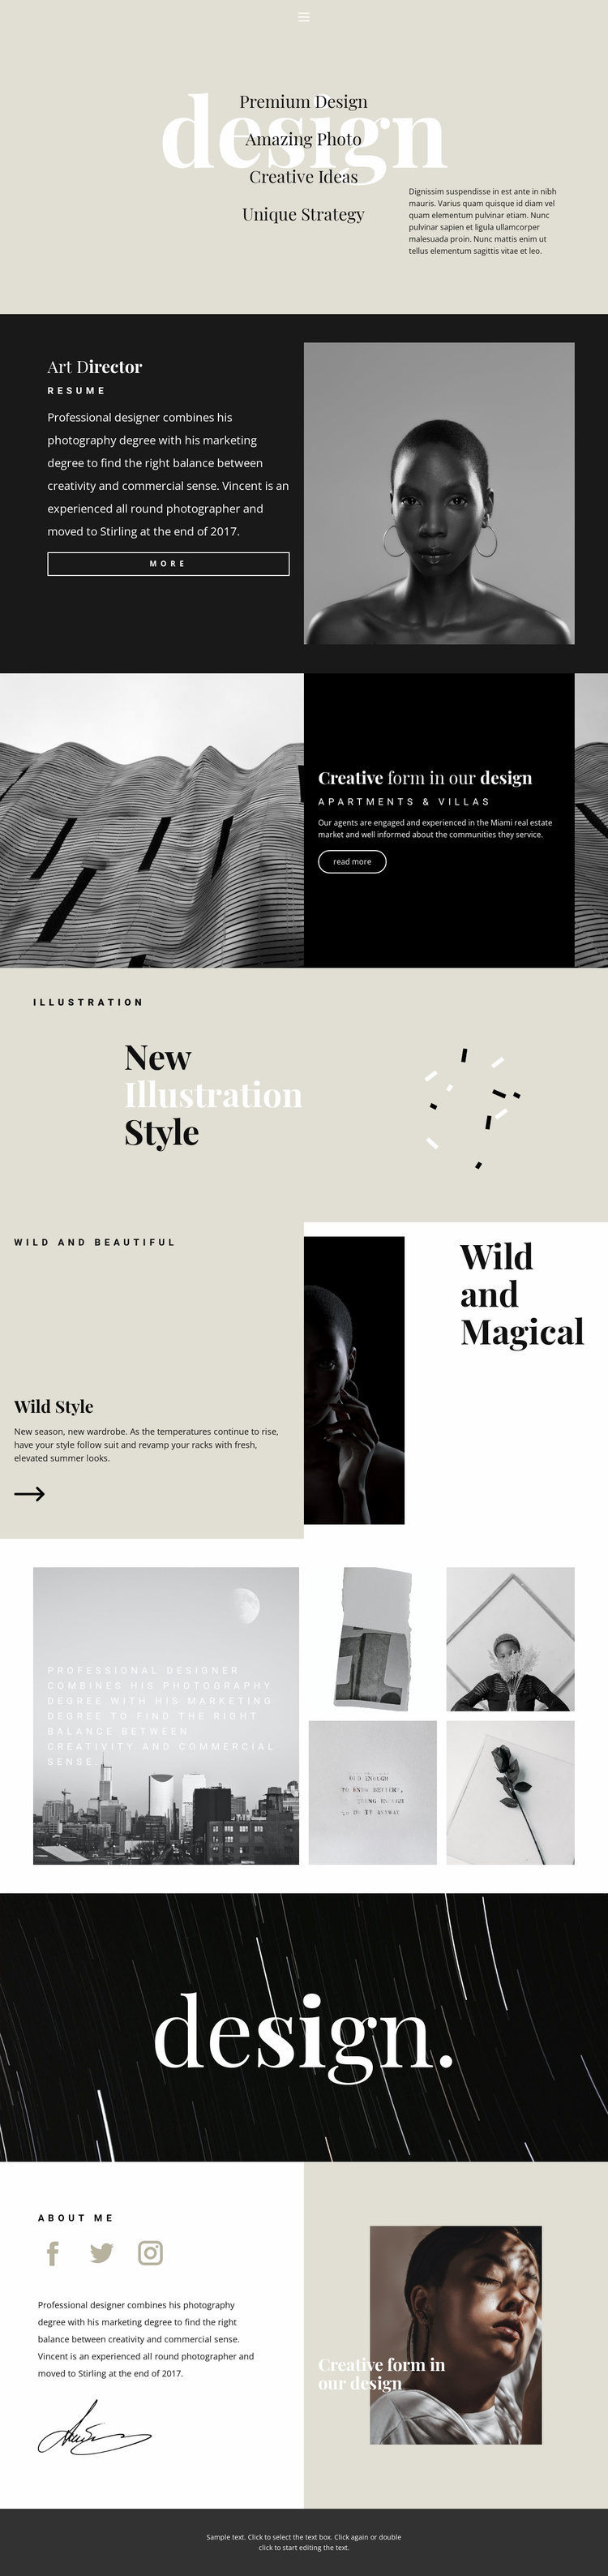 Directions of design studio Website Template